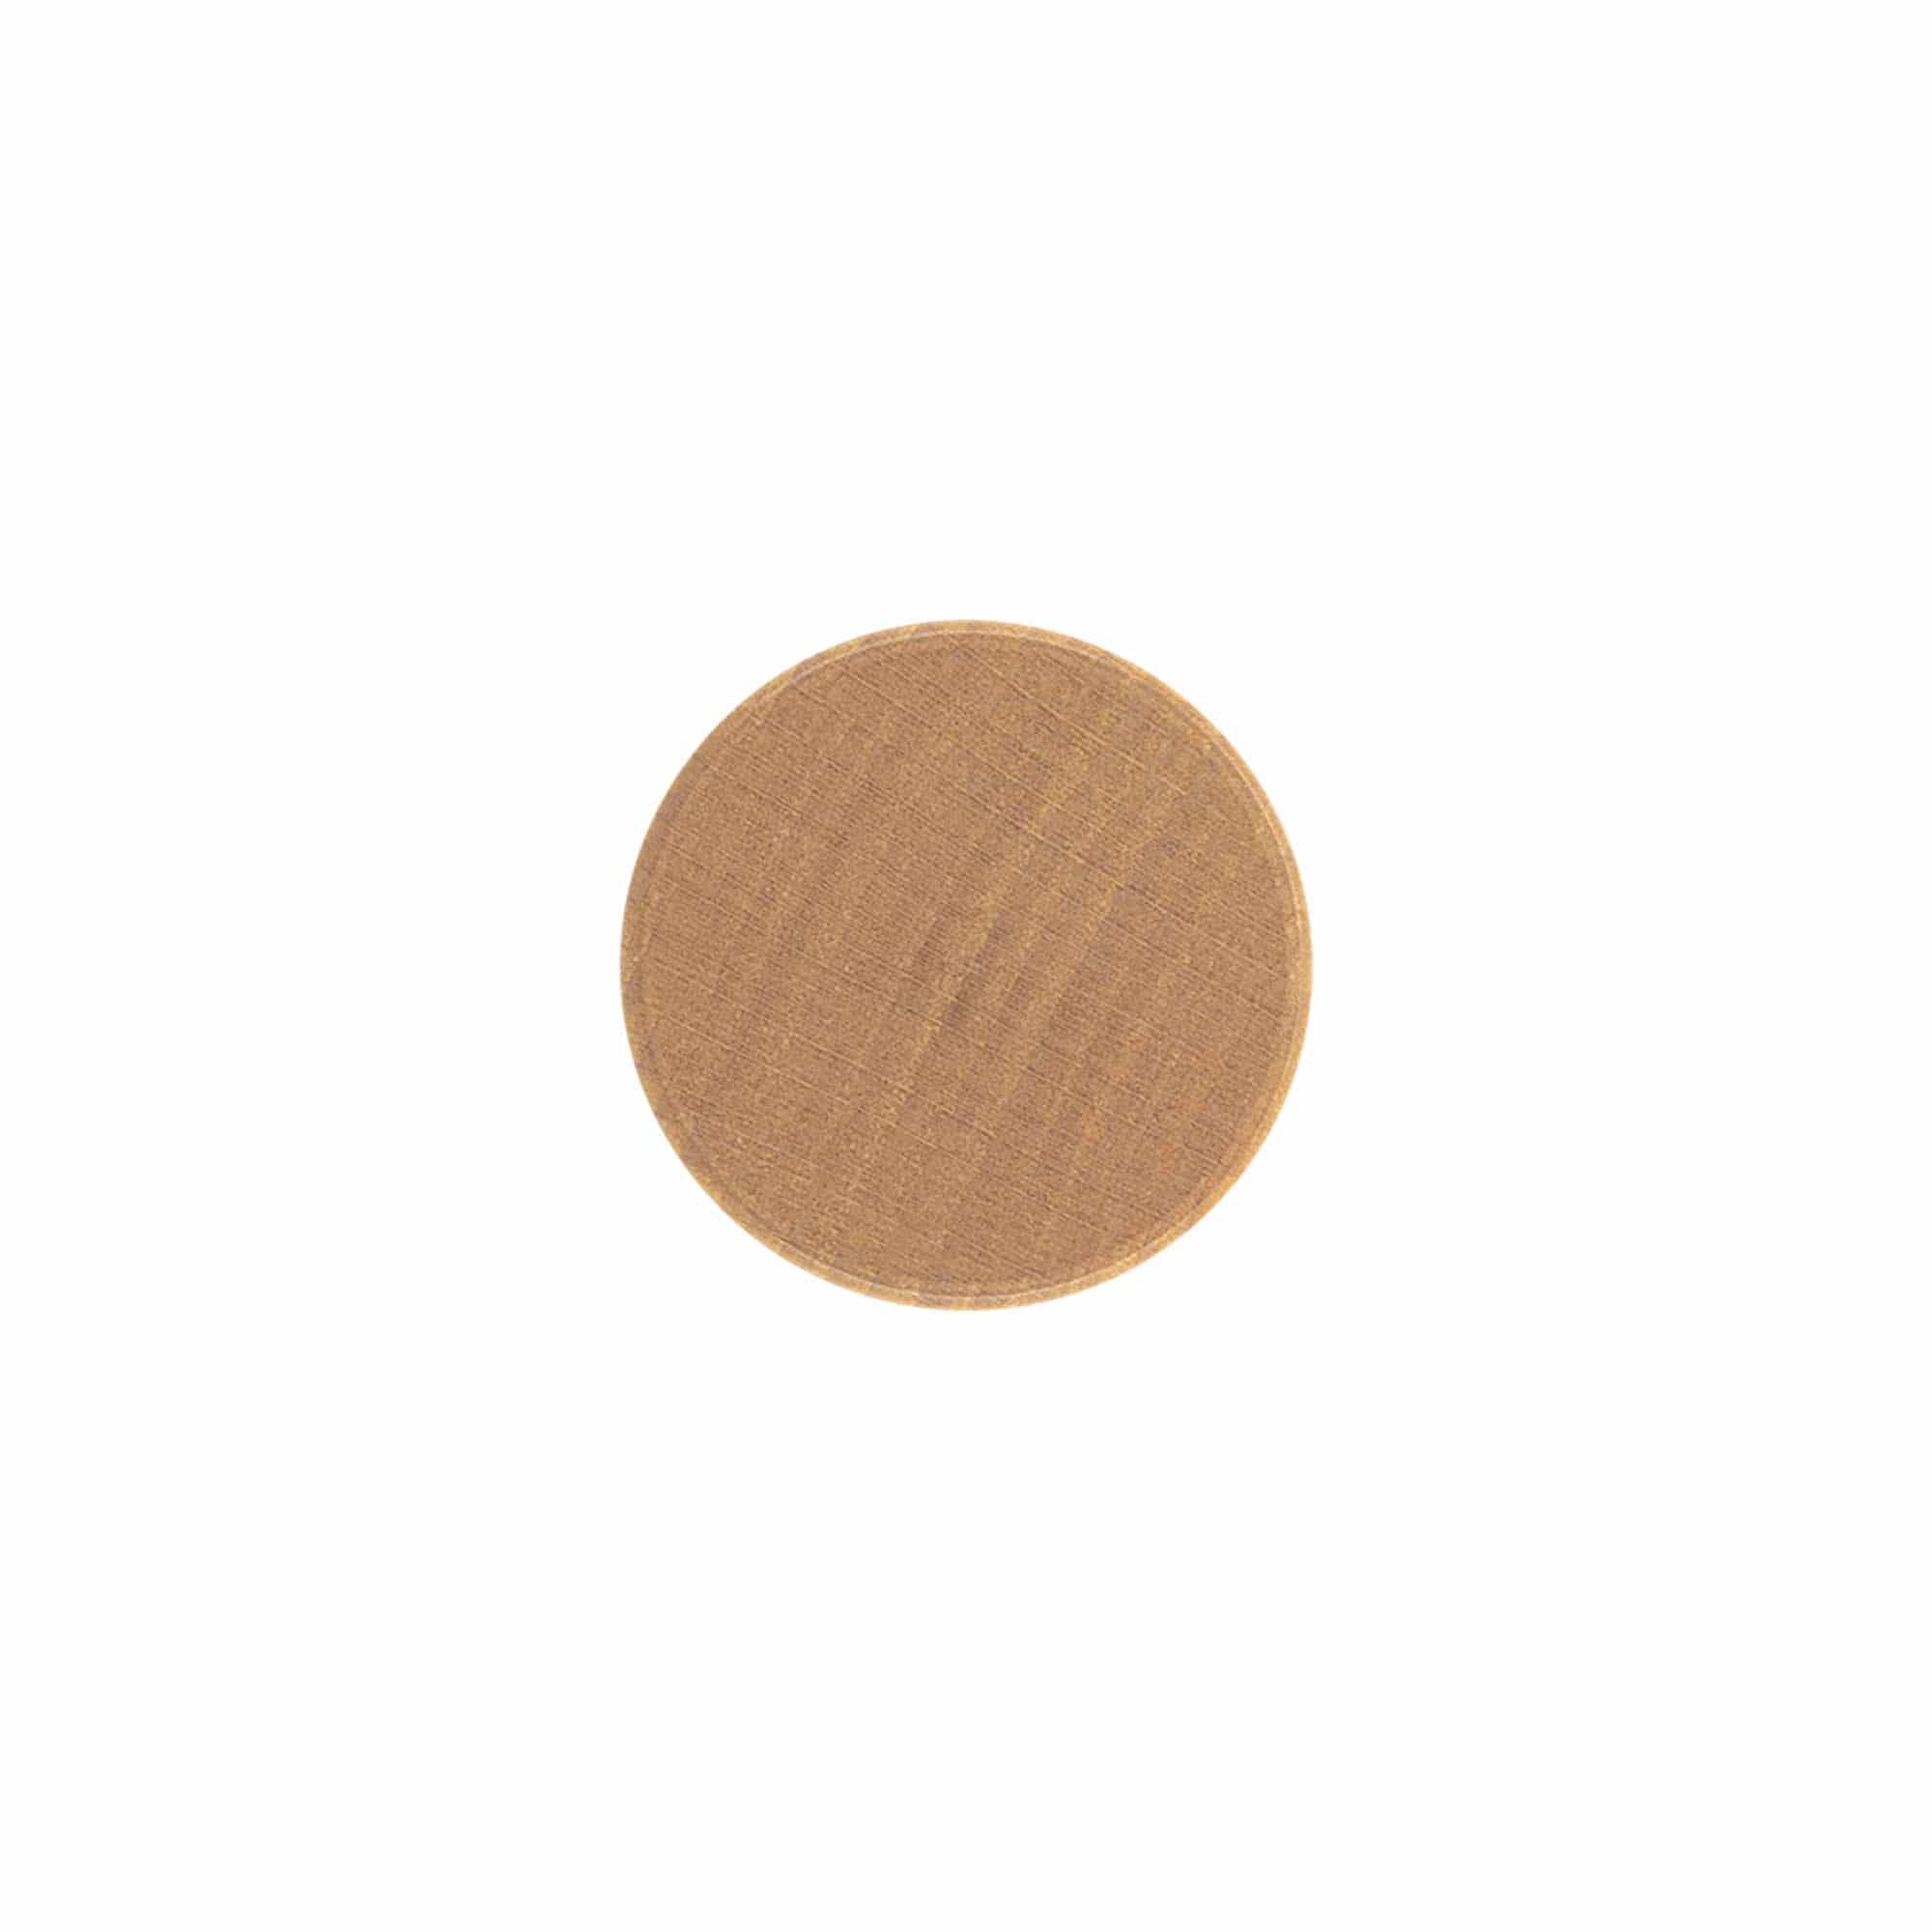 Šroubovací uzávěr, kov-dřevo, barva dřeva, pro ústí: PP 28